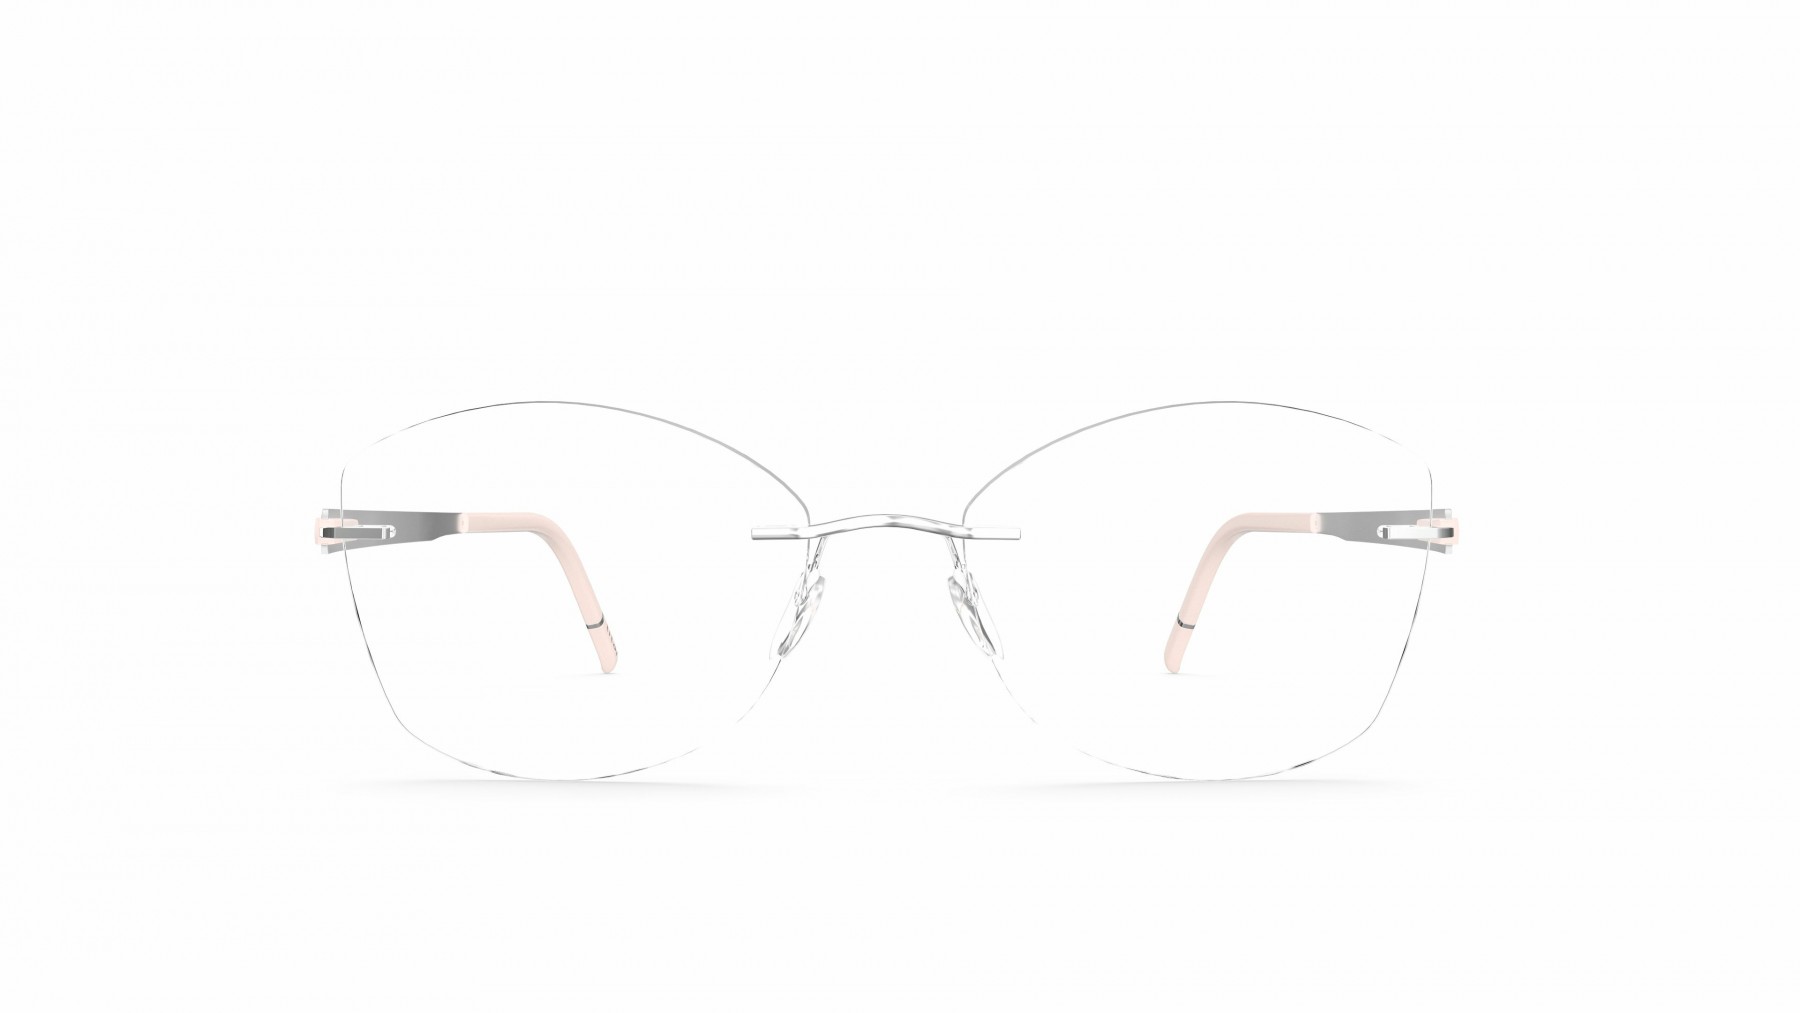 Silhouette 5555 KL 7000 - Oculos de Grau